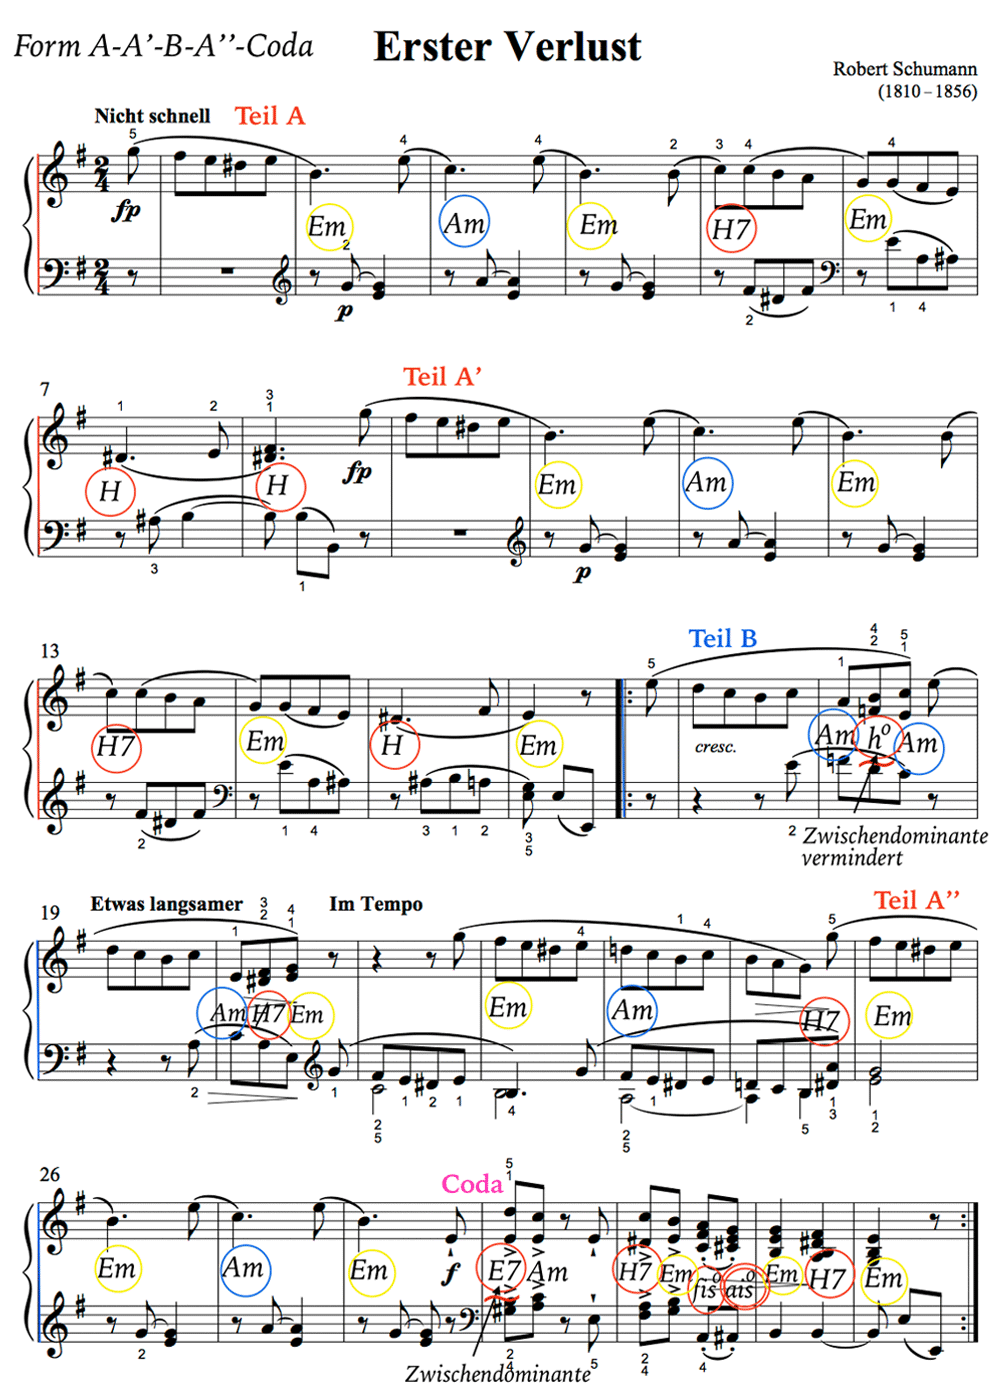 Form und Harmonie - Robert Schumann: Erster Verlust